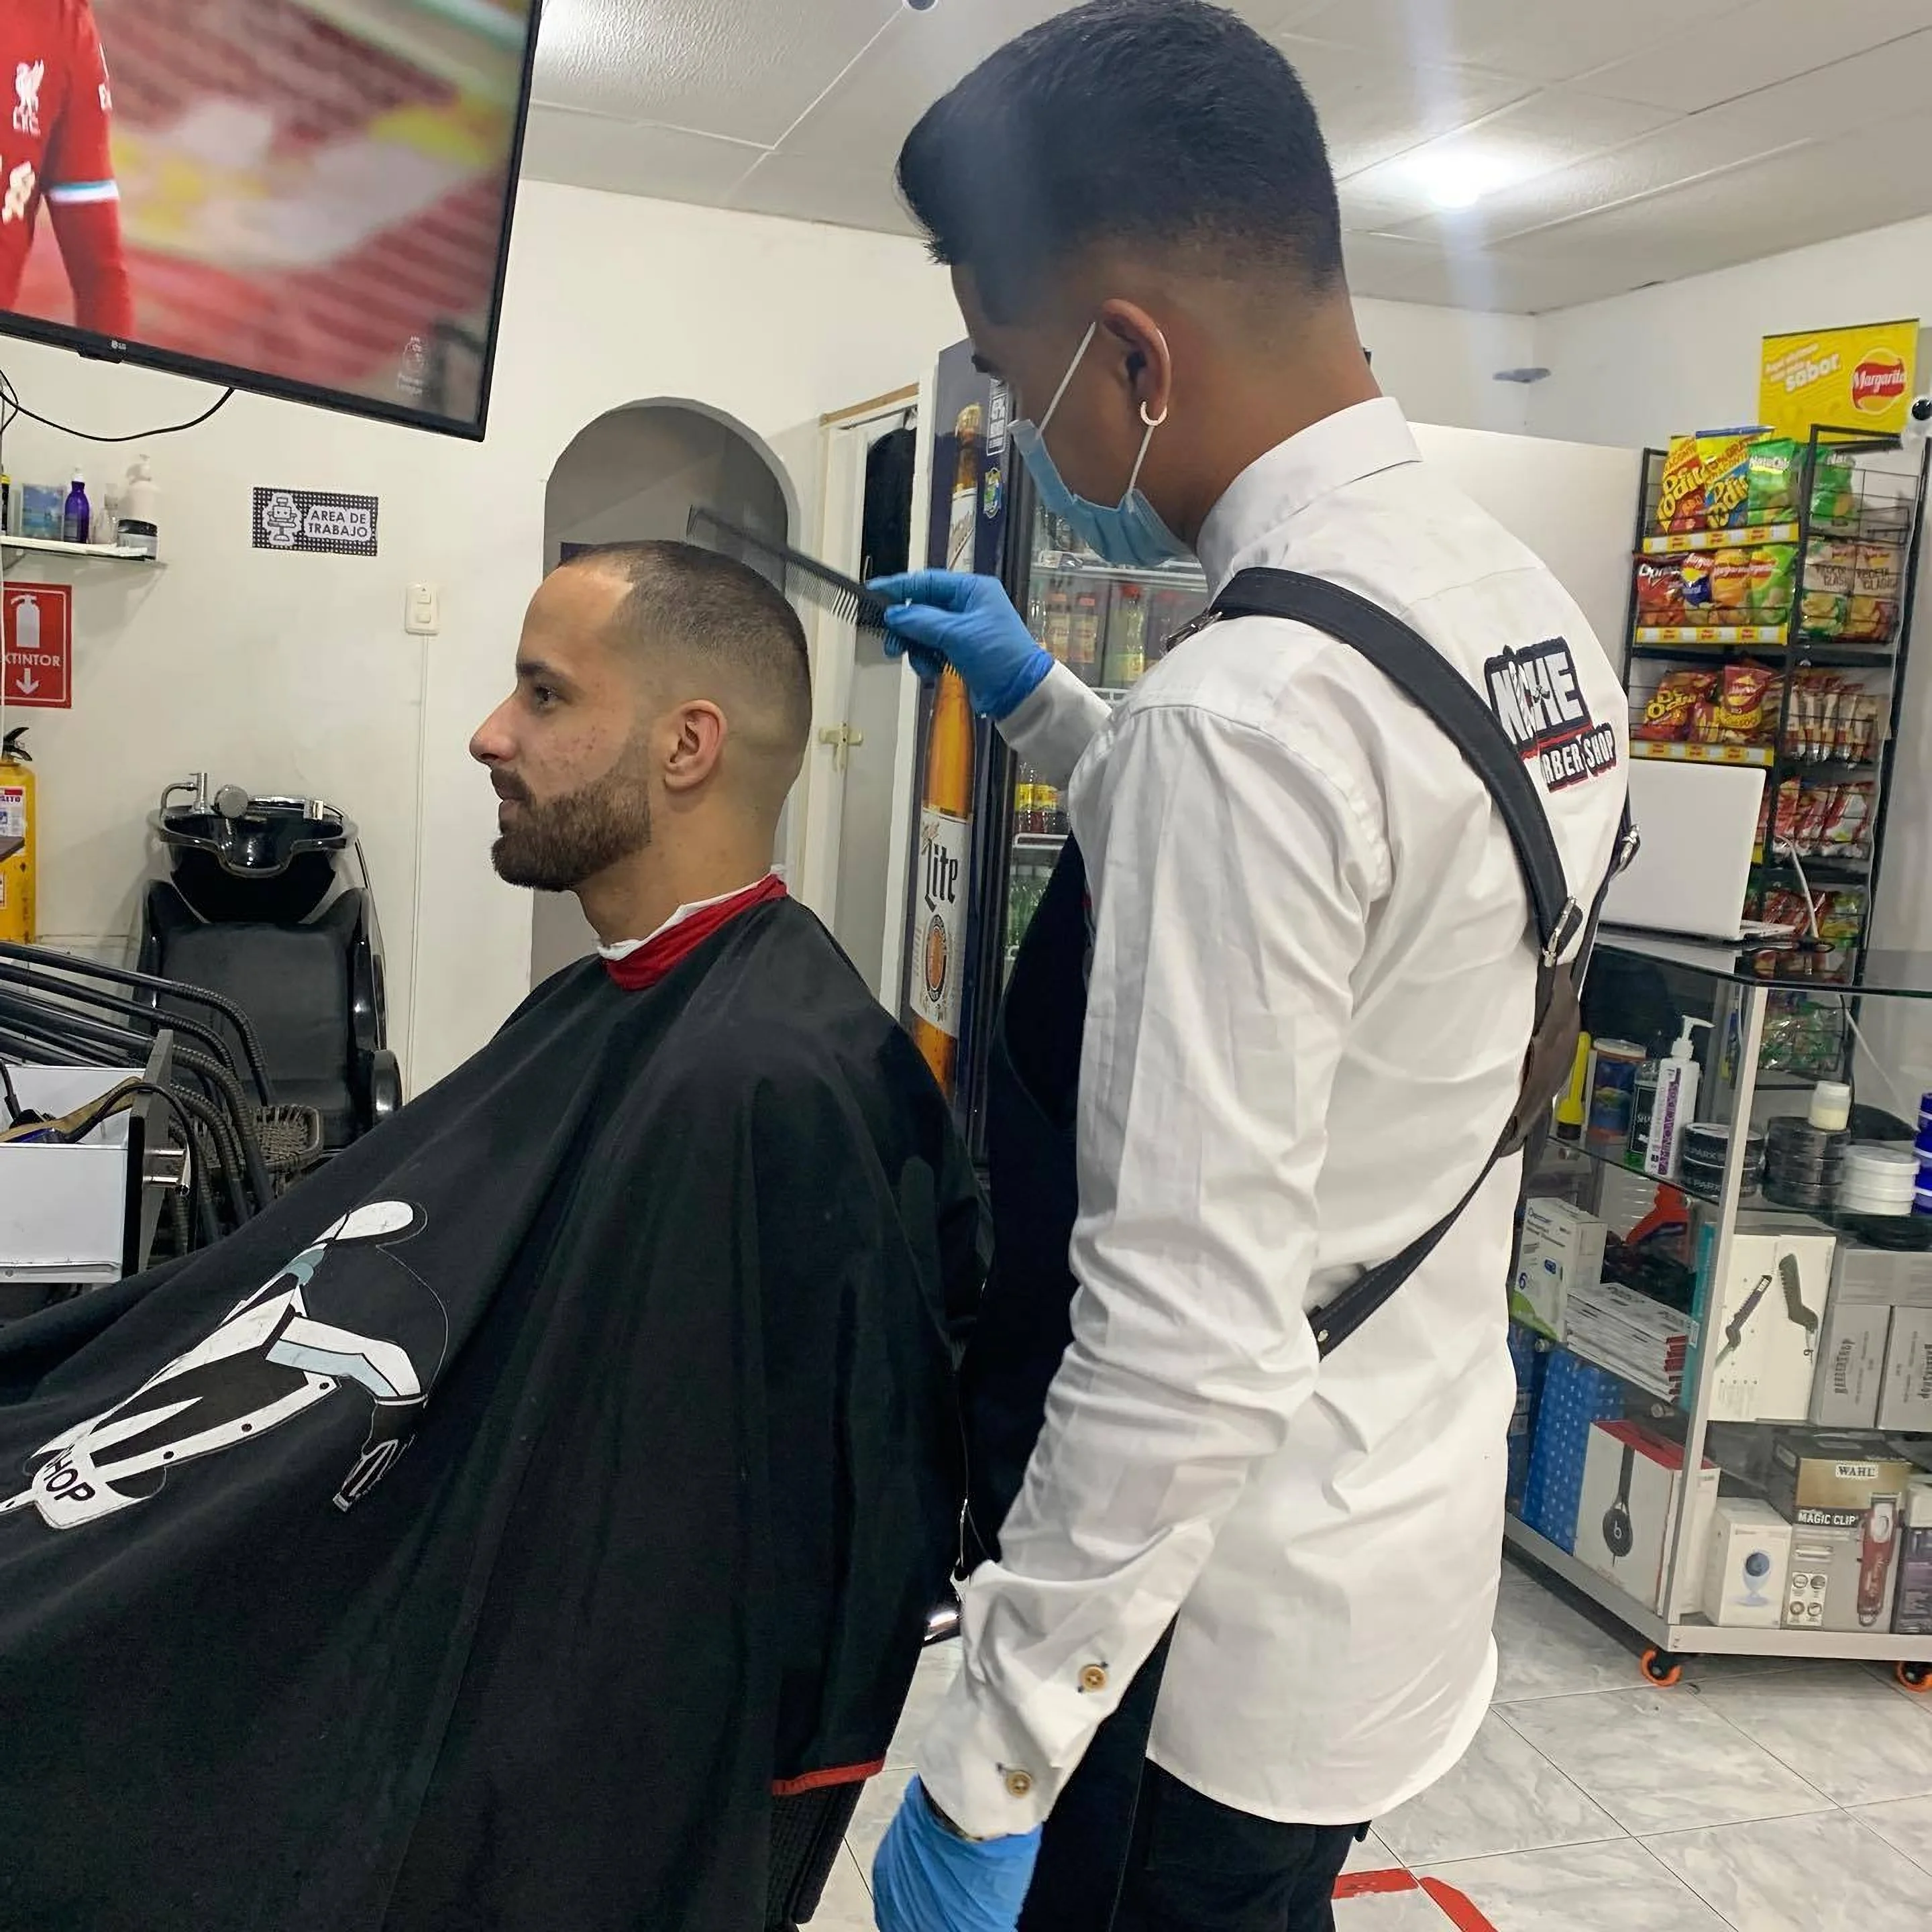 Barbería-niche-barber-shop-7555